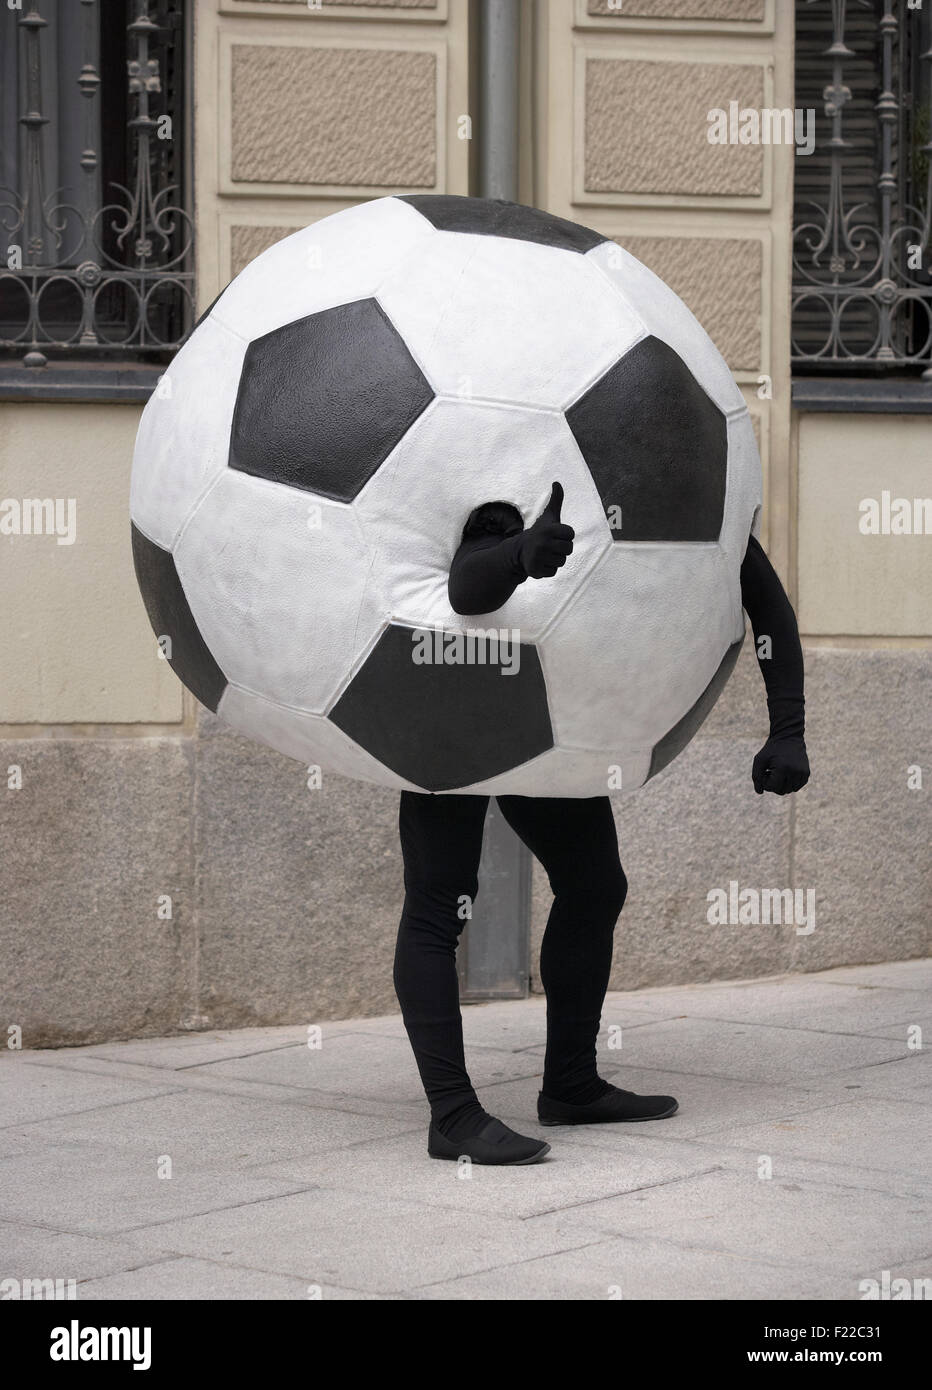 Balón de fútbol disfrazada en una calle con señal OK Fotografía de stock -  Alamy